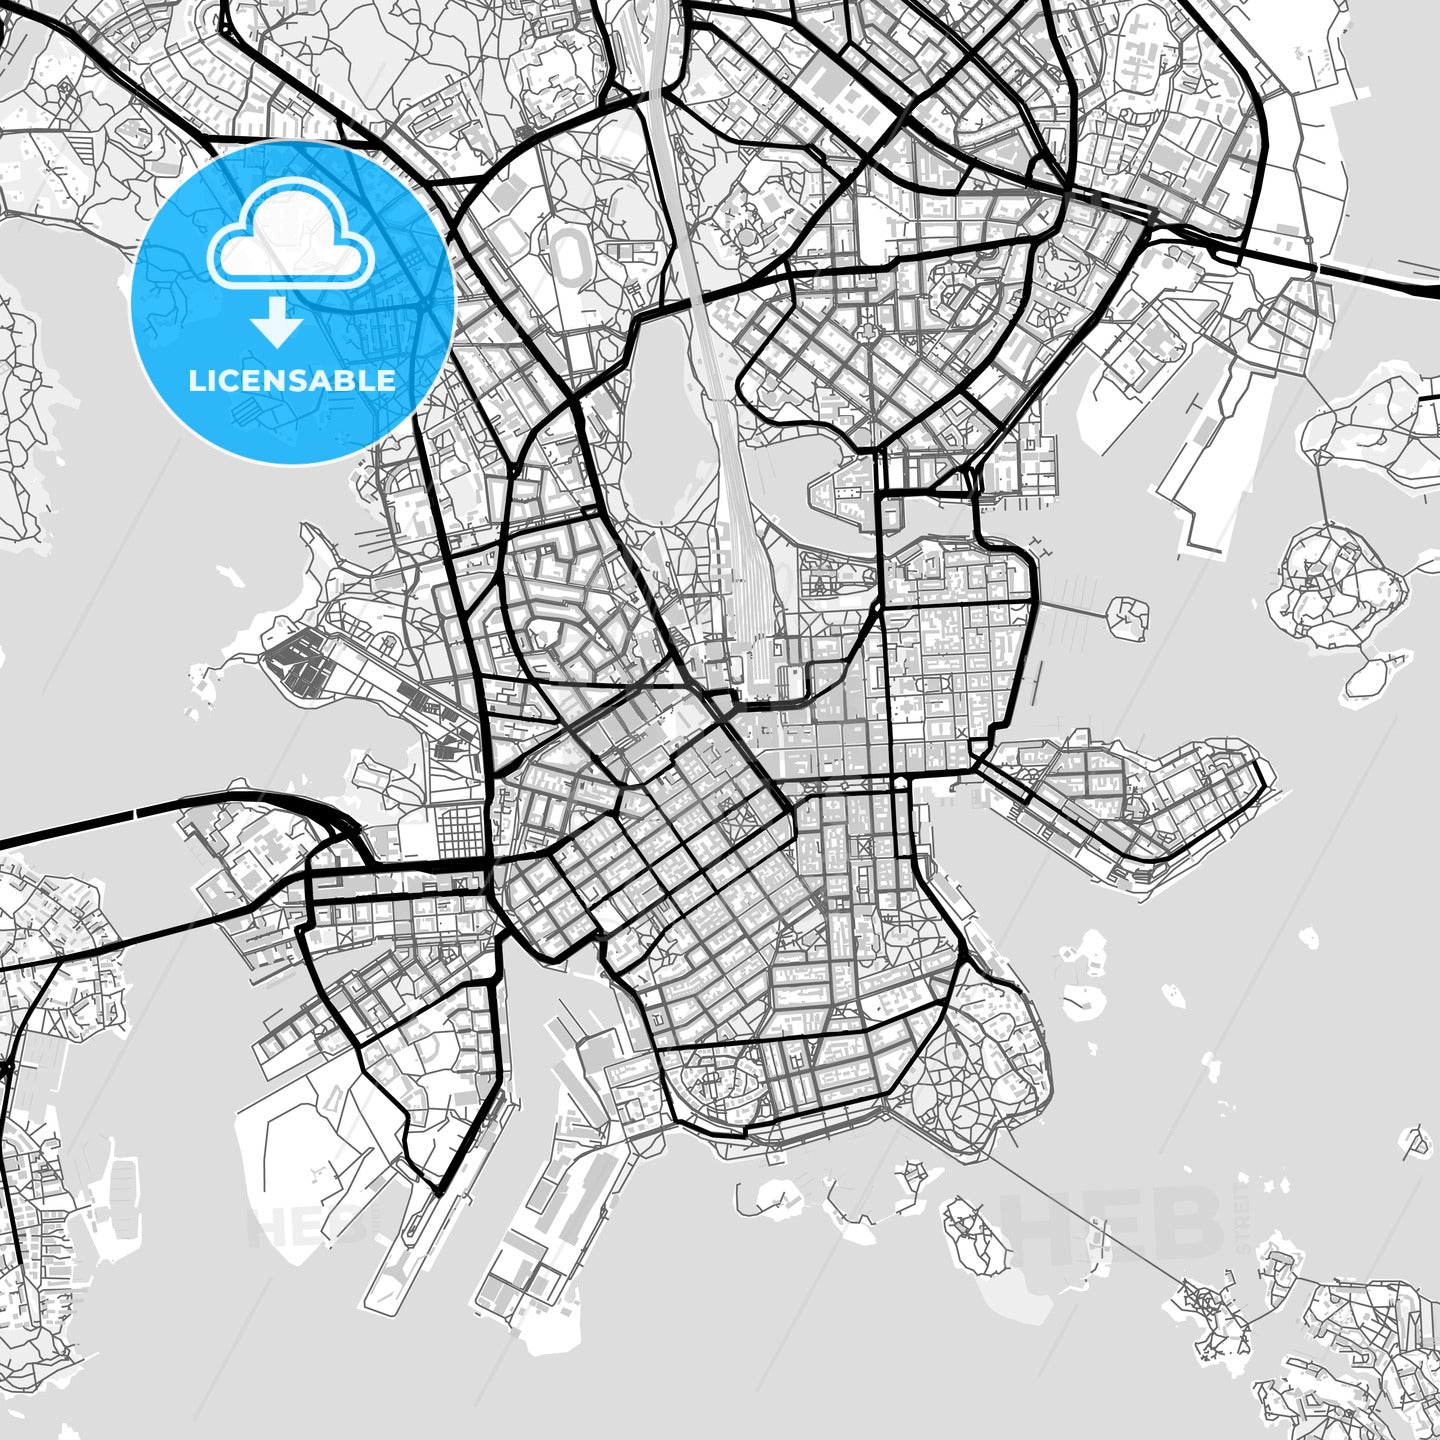 Downtown map of Helsinki, Finland